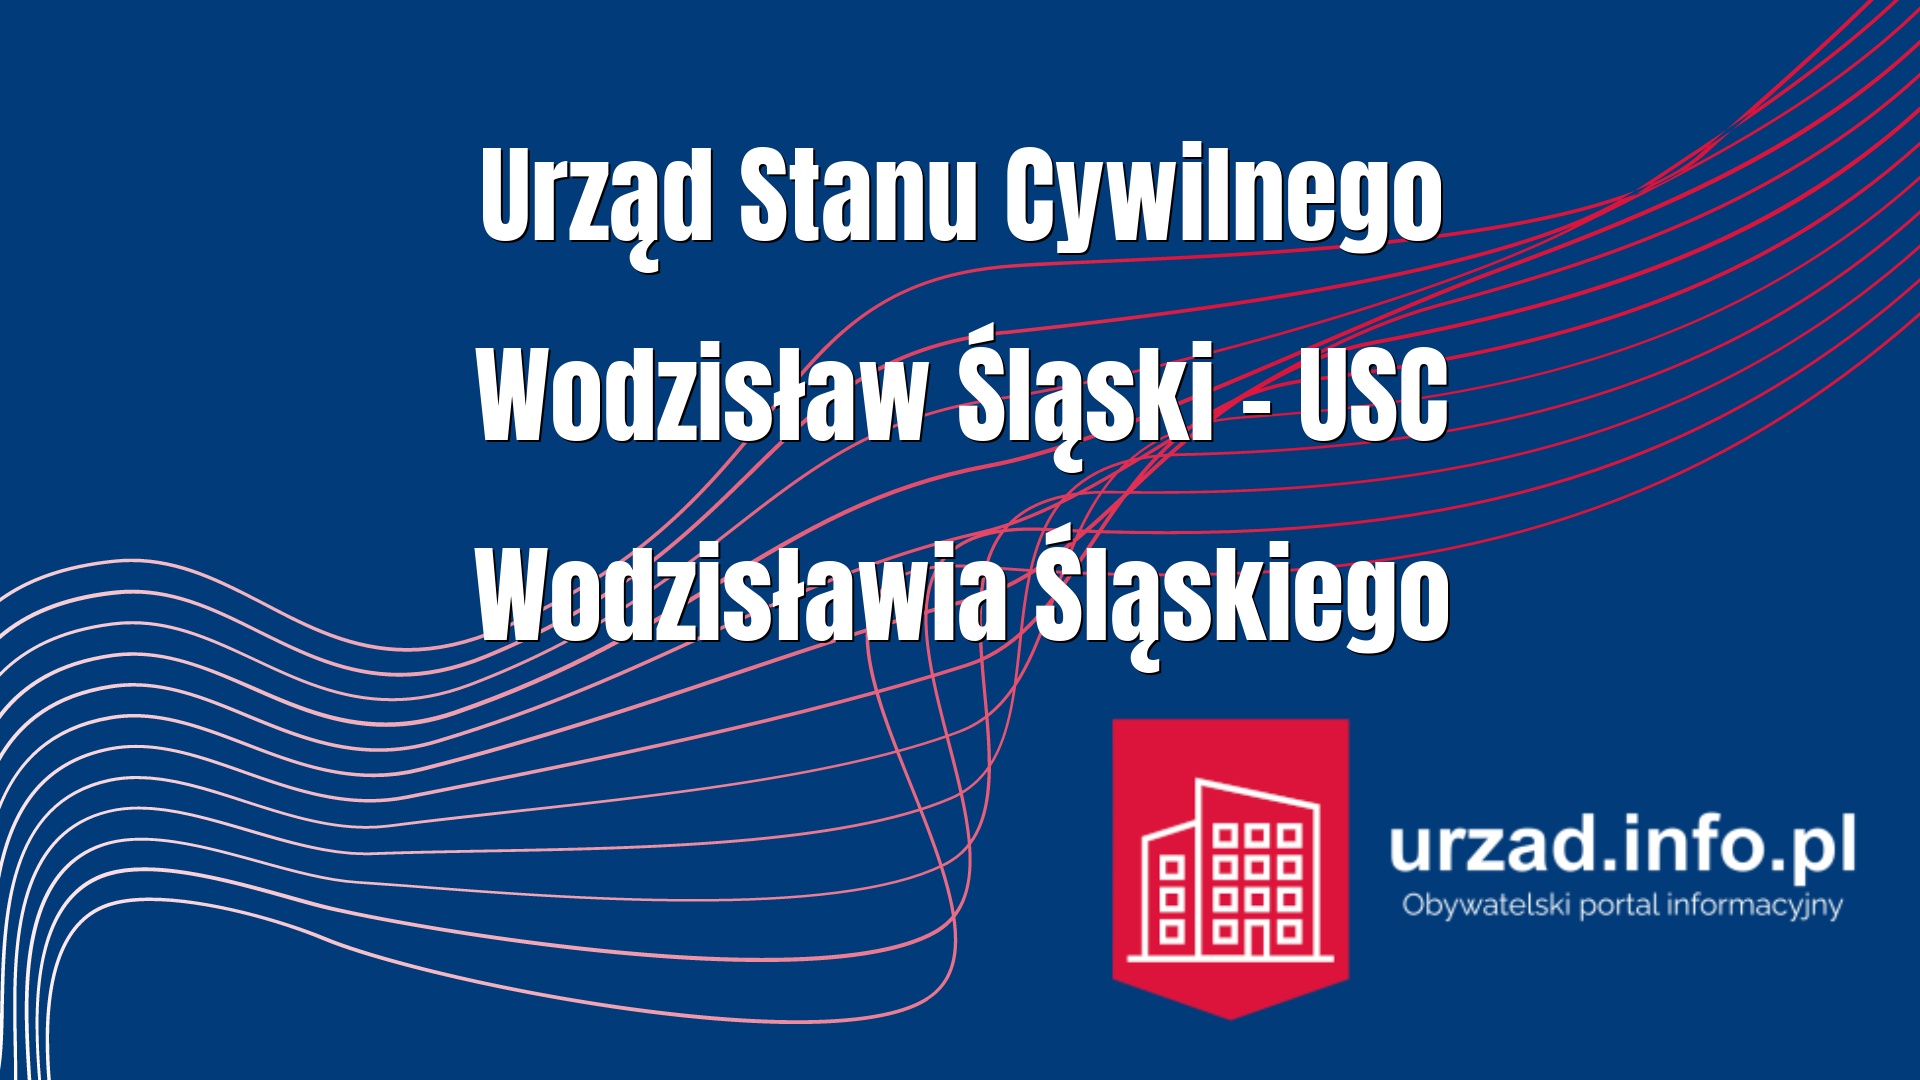 Urząd Stanu Cywilnego Wodzisław Śląski – USC Wodzisławia Śląskiego